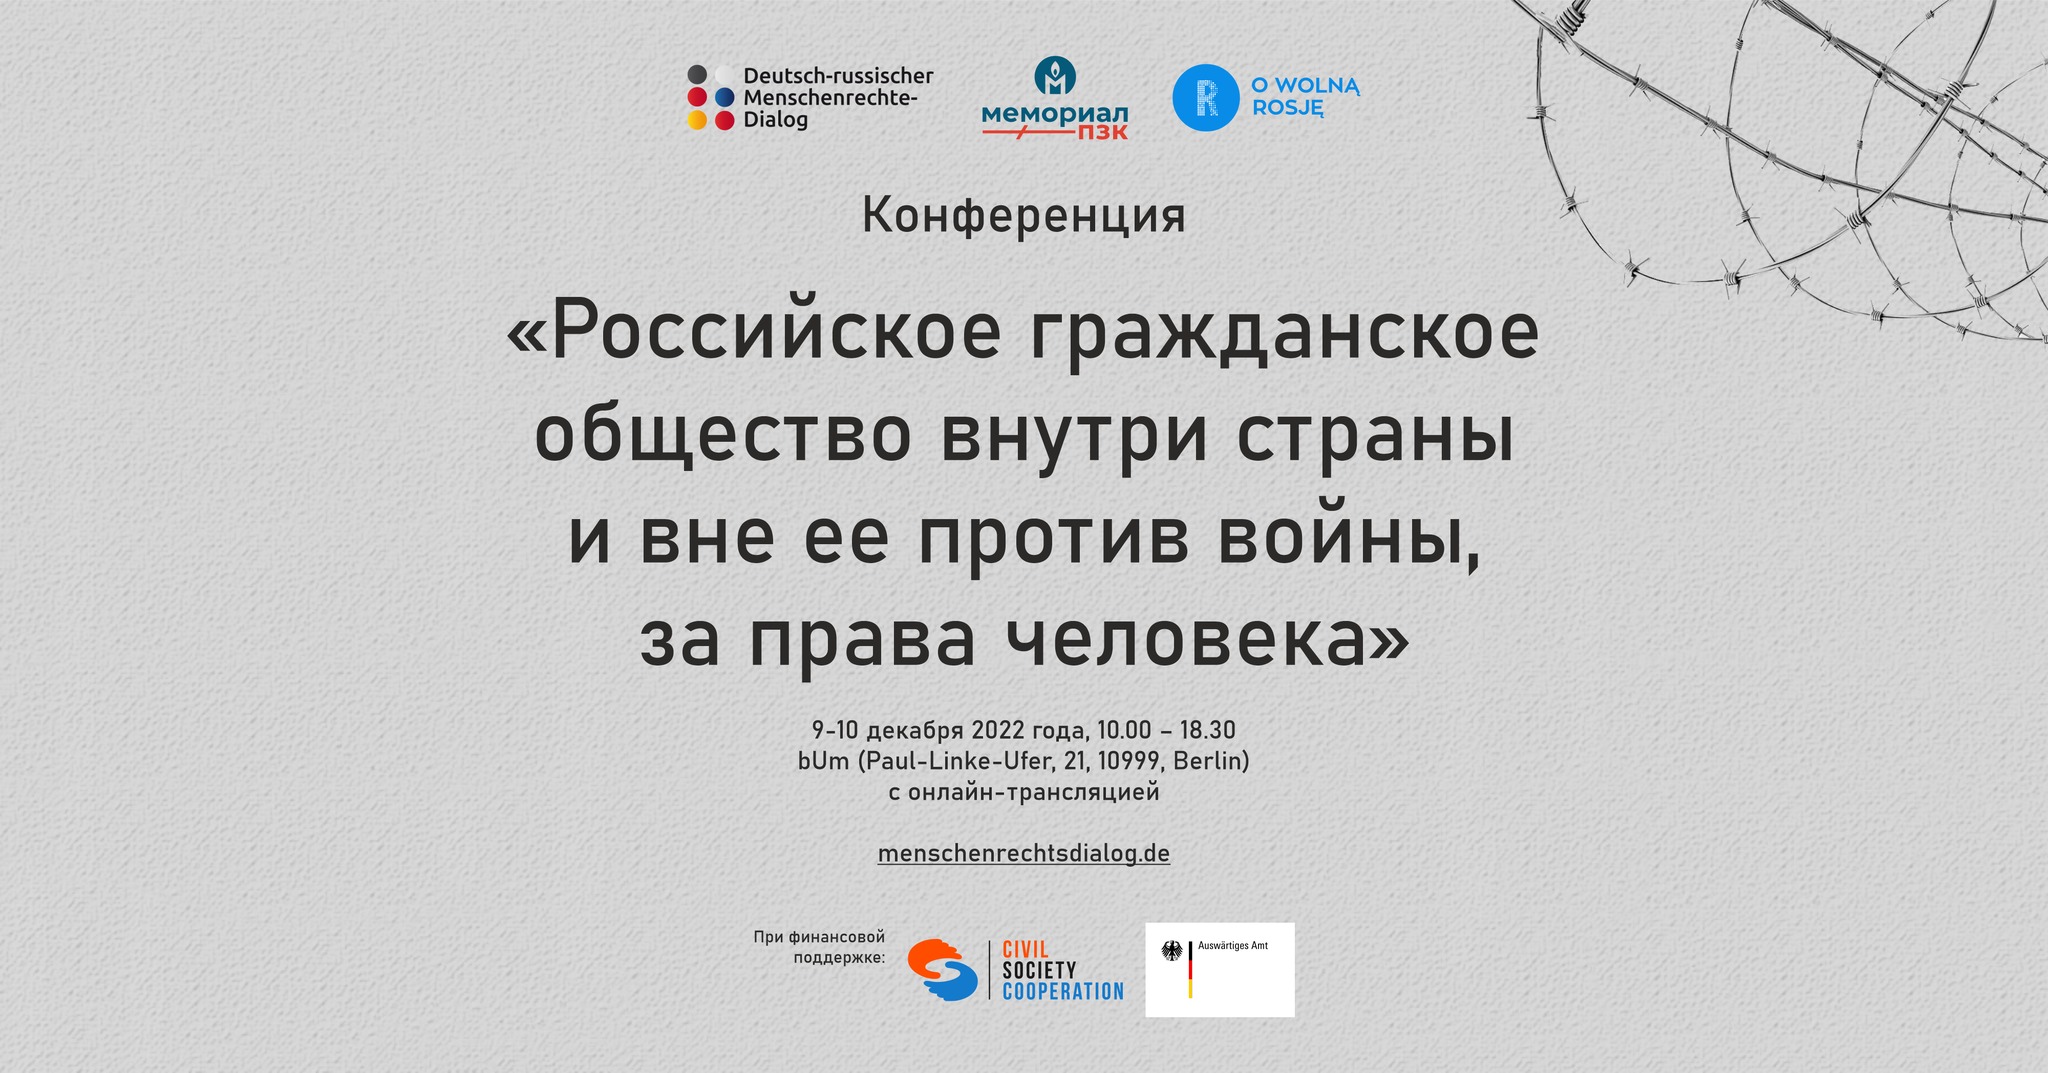 Конференция «Российское гражданское общество внутри страны и вне ее против войны, за права человека»